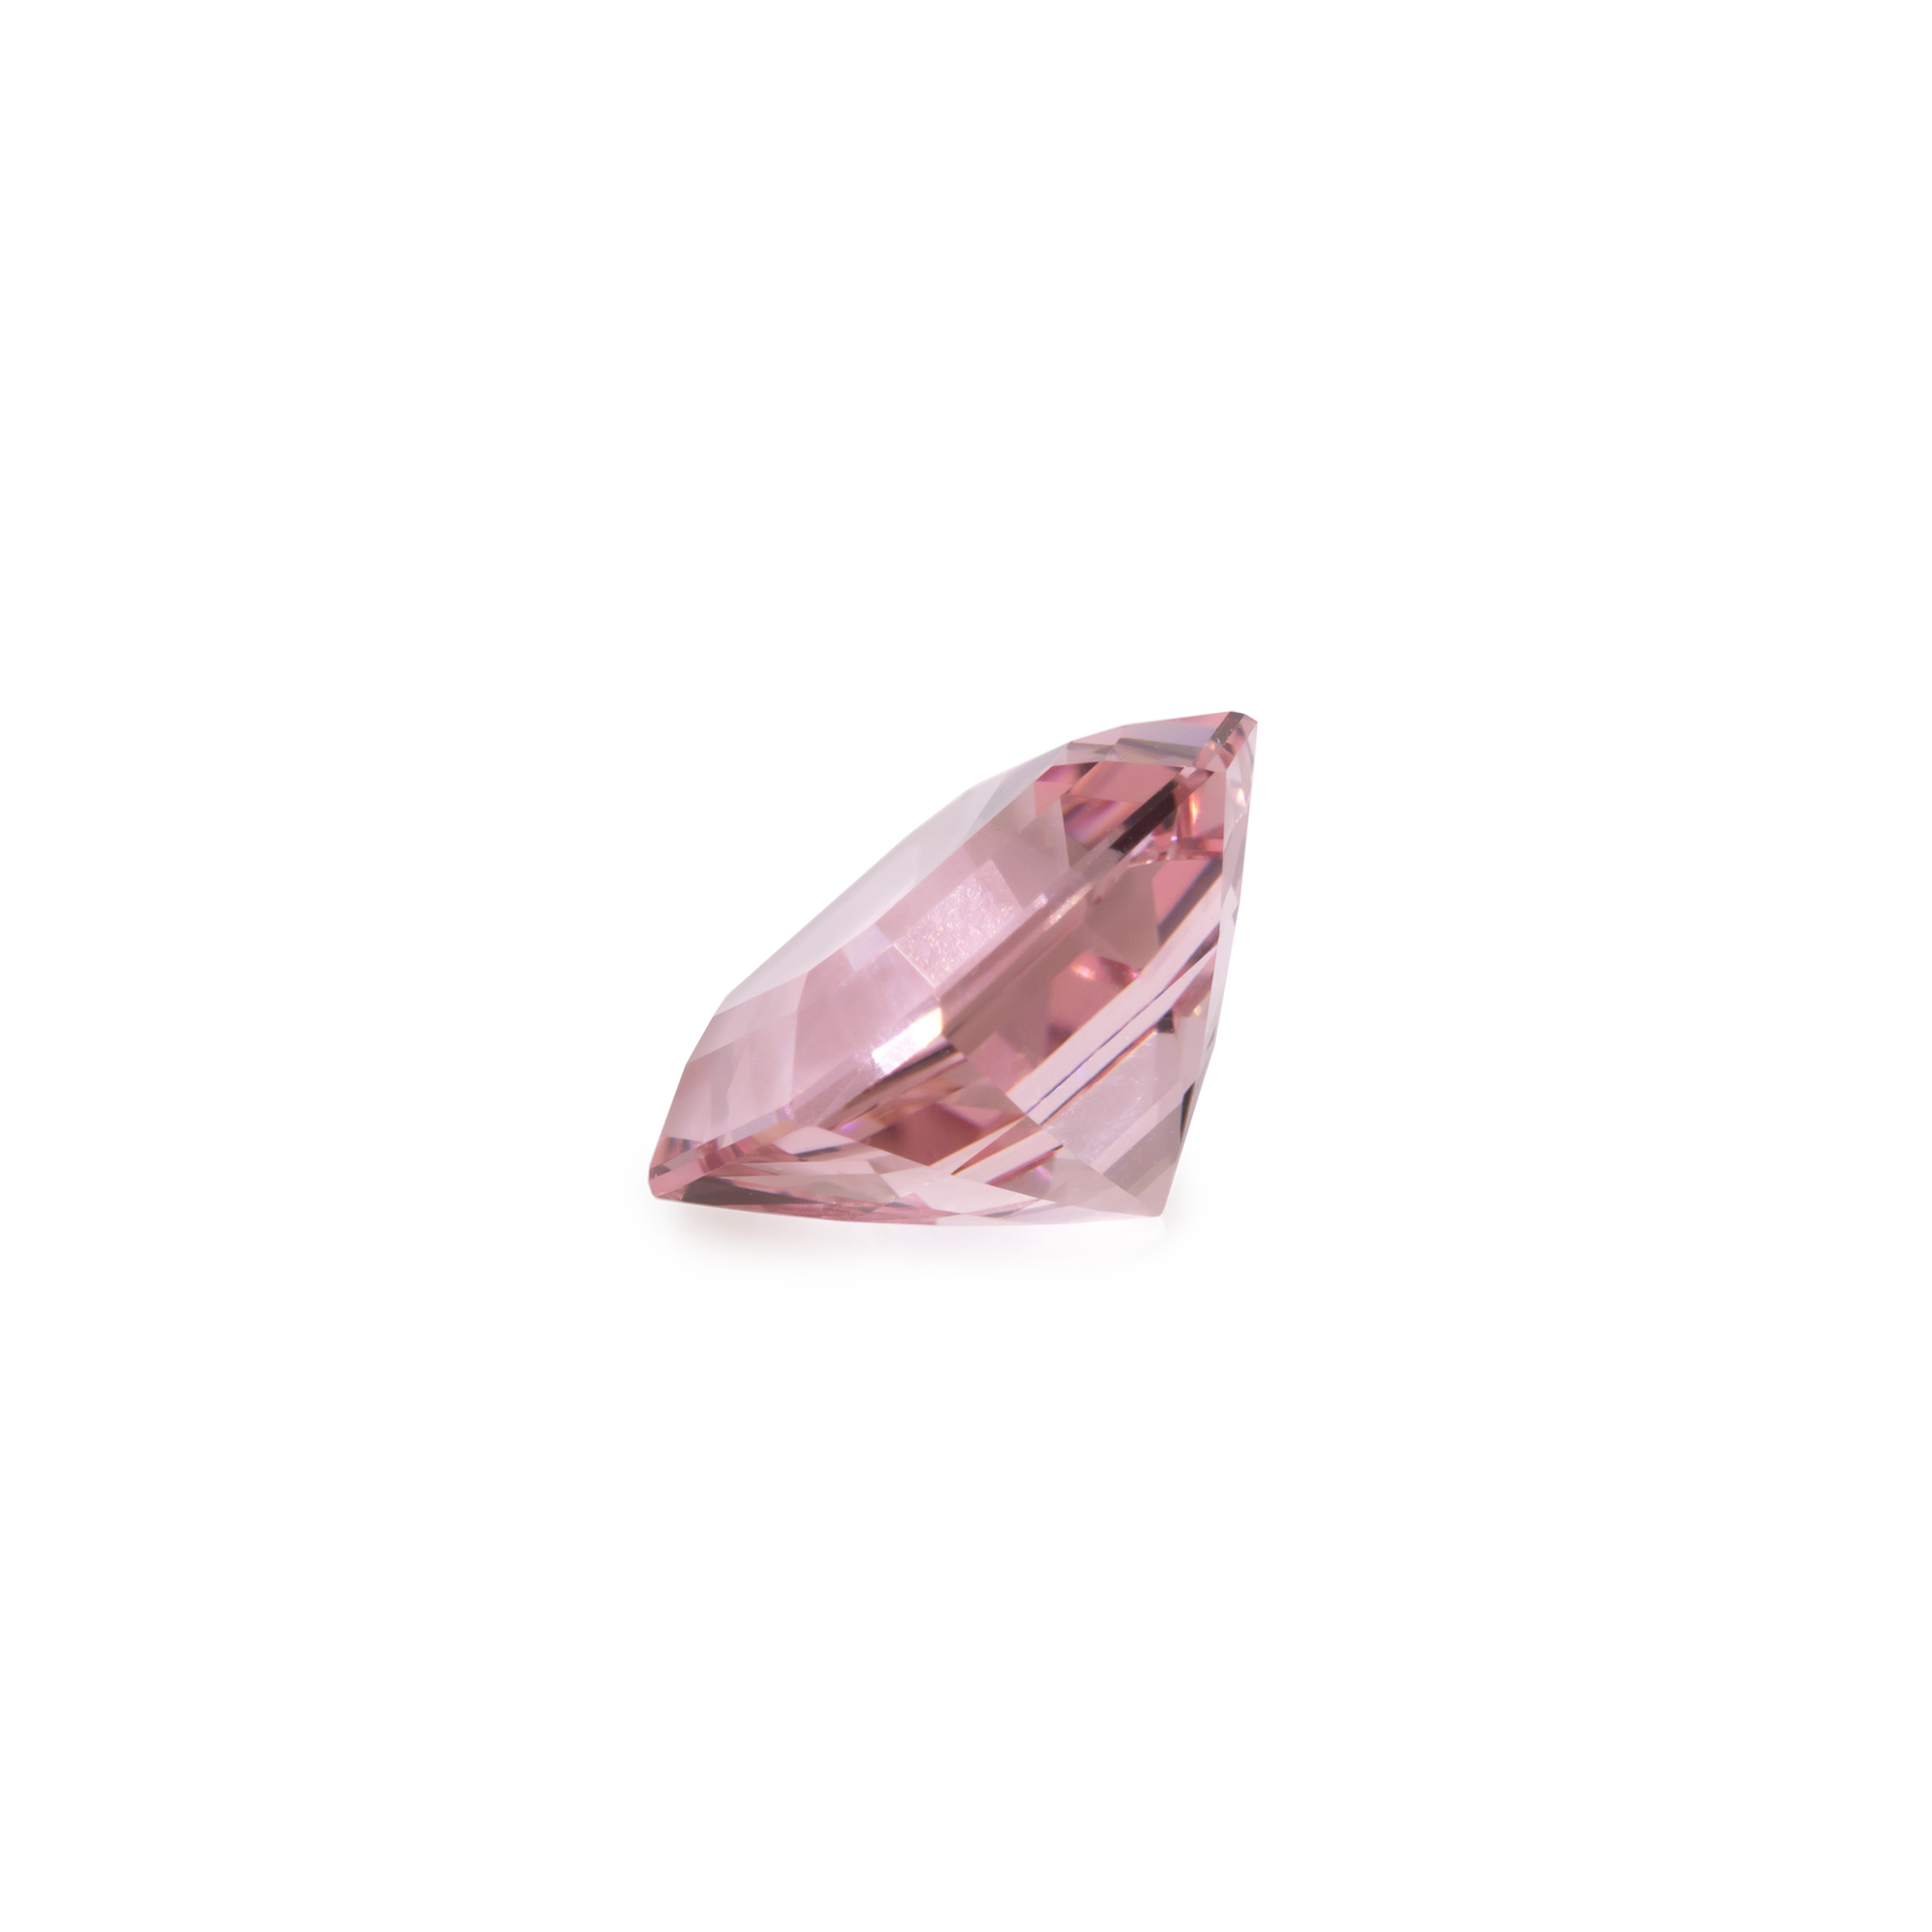 Morganite - pink, assher, 9x9 mm, 2.85 cts, No. MO19001